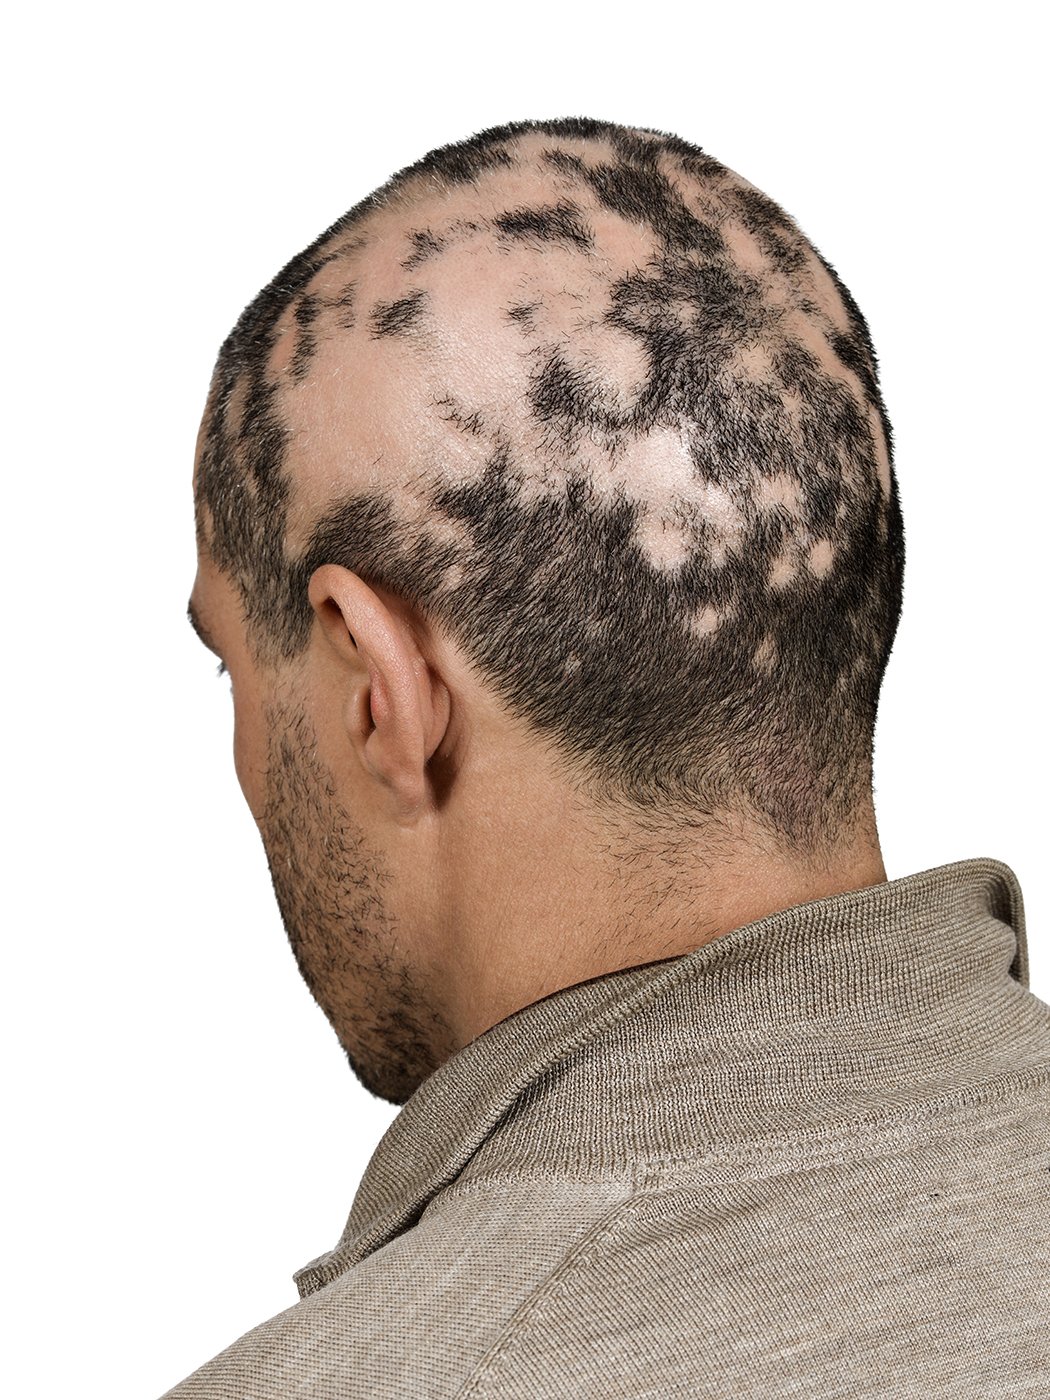 alopecia 3